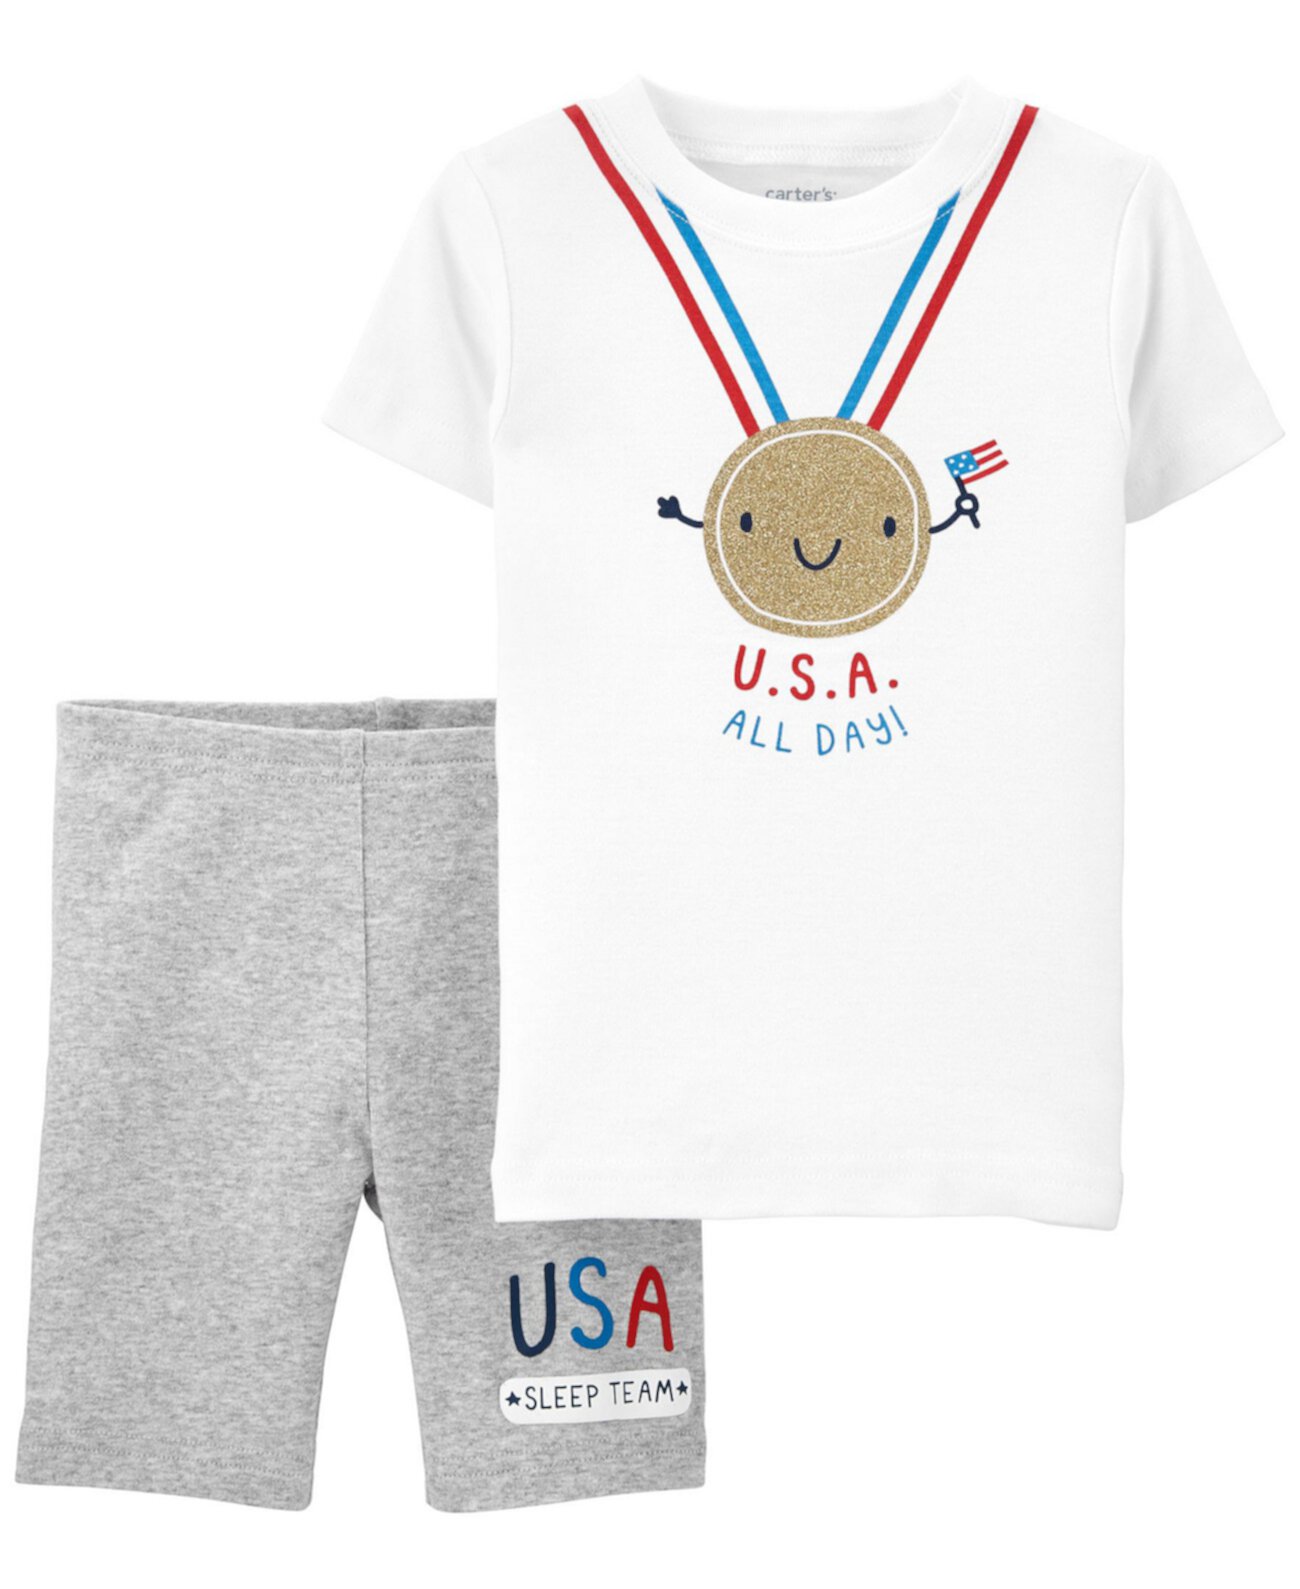 Пижама облегающего кроя для мальчиков и девочек Toddler Boys and Girls Olympics, комплект из 2 предметов Carter's